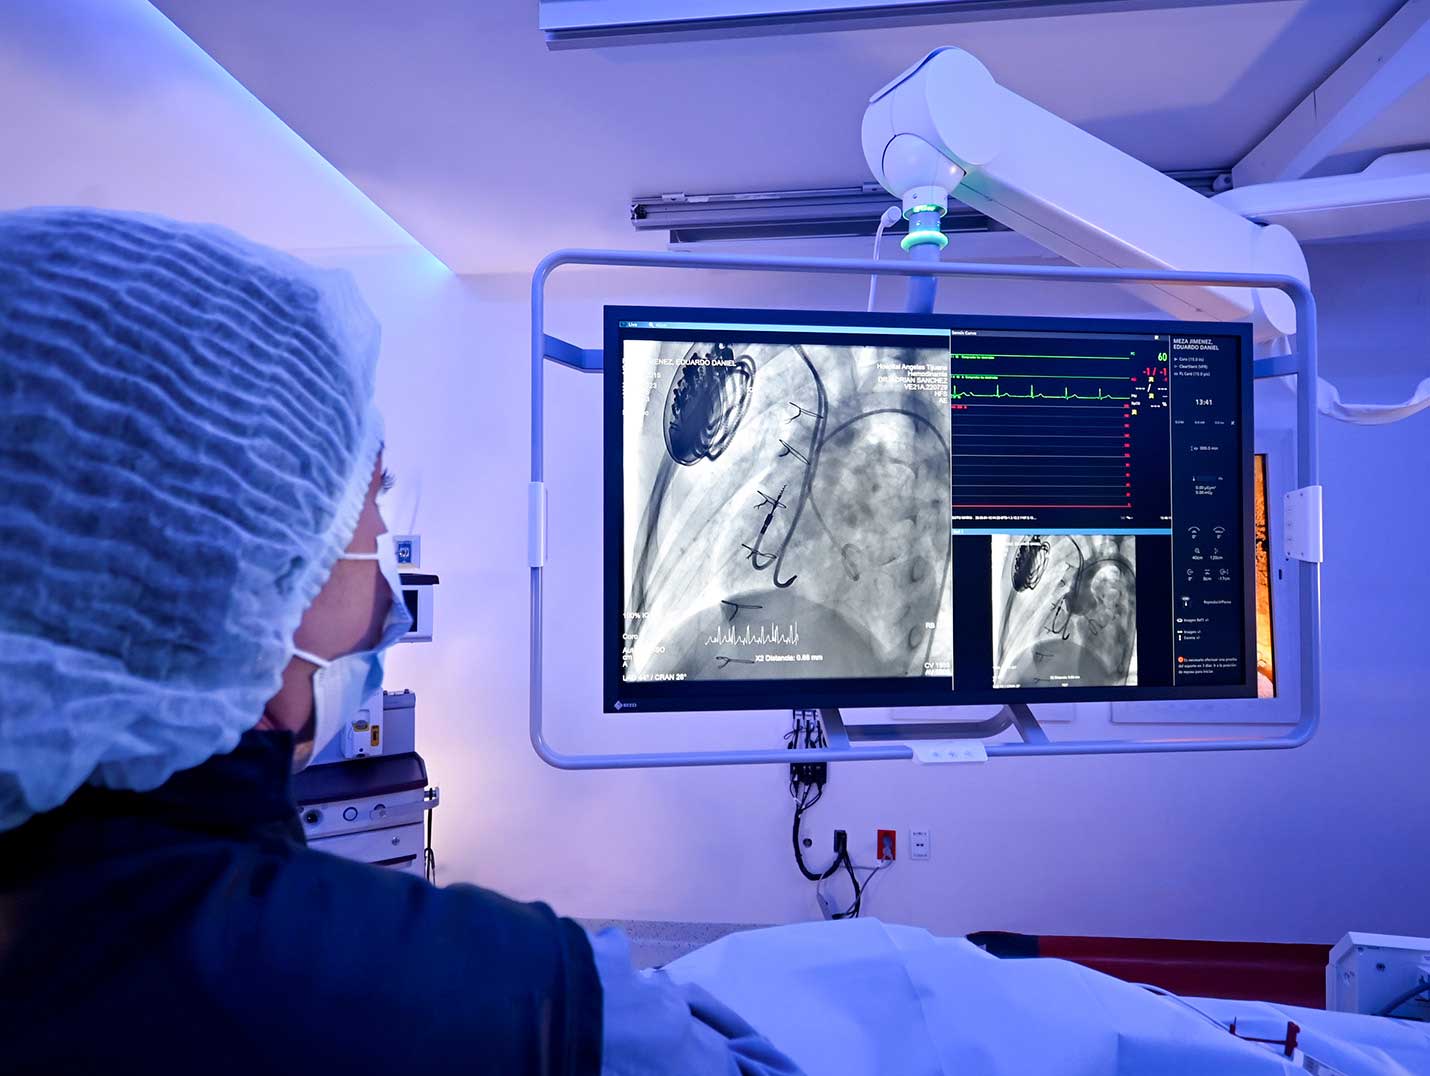 Doctora con cofia y cubrebocas mirando una radiografía de tórax en un monitor blanco, dentro de un quirófano